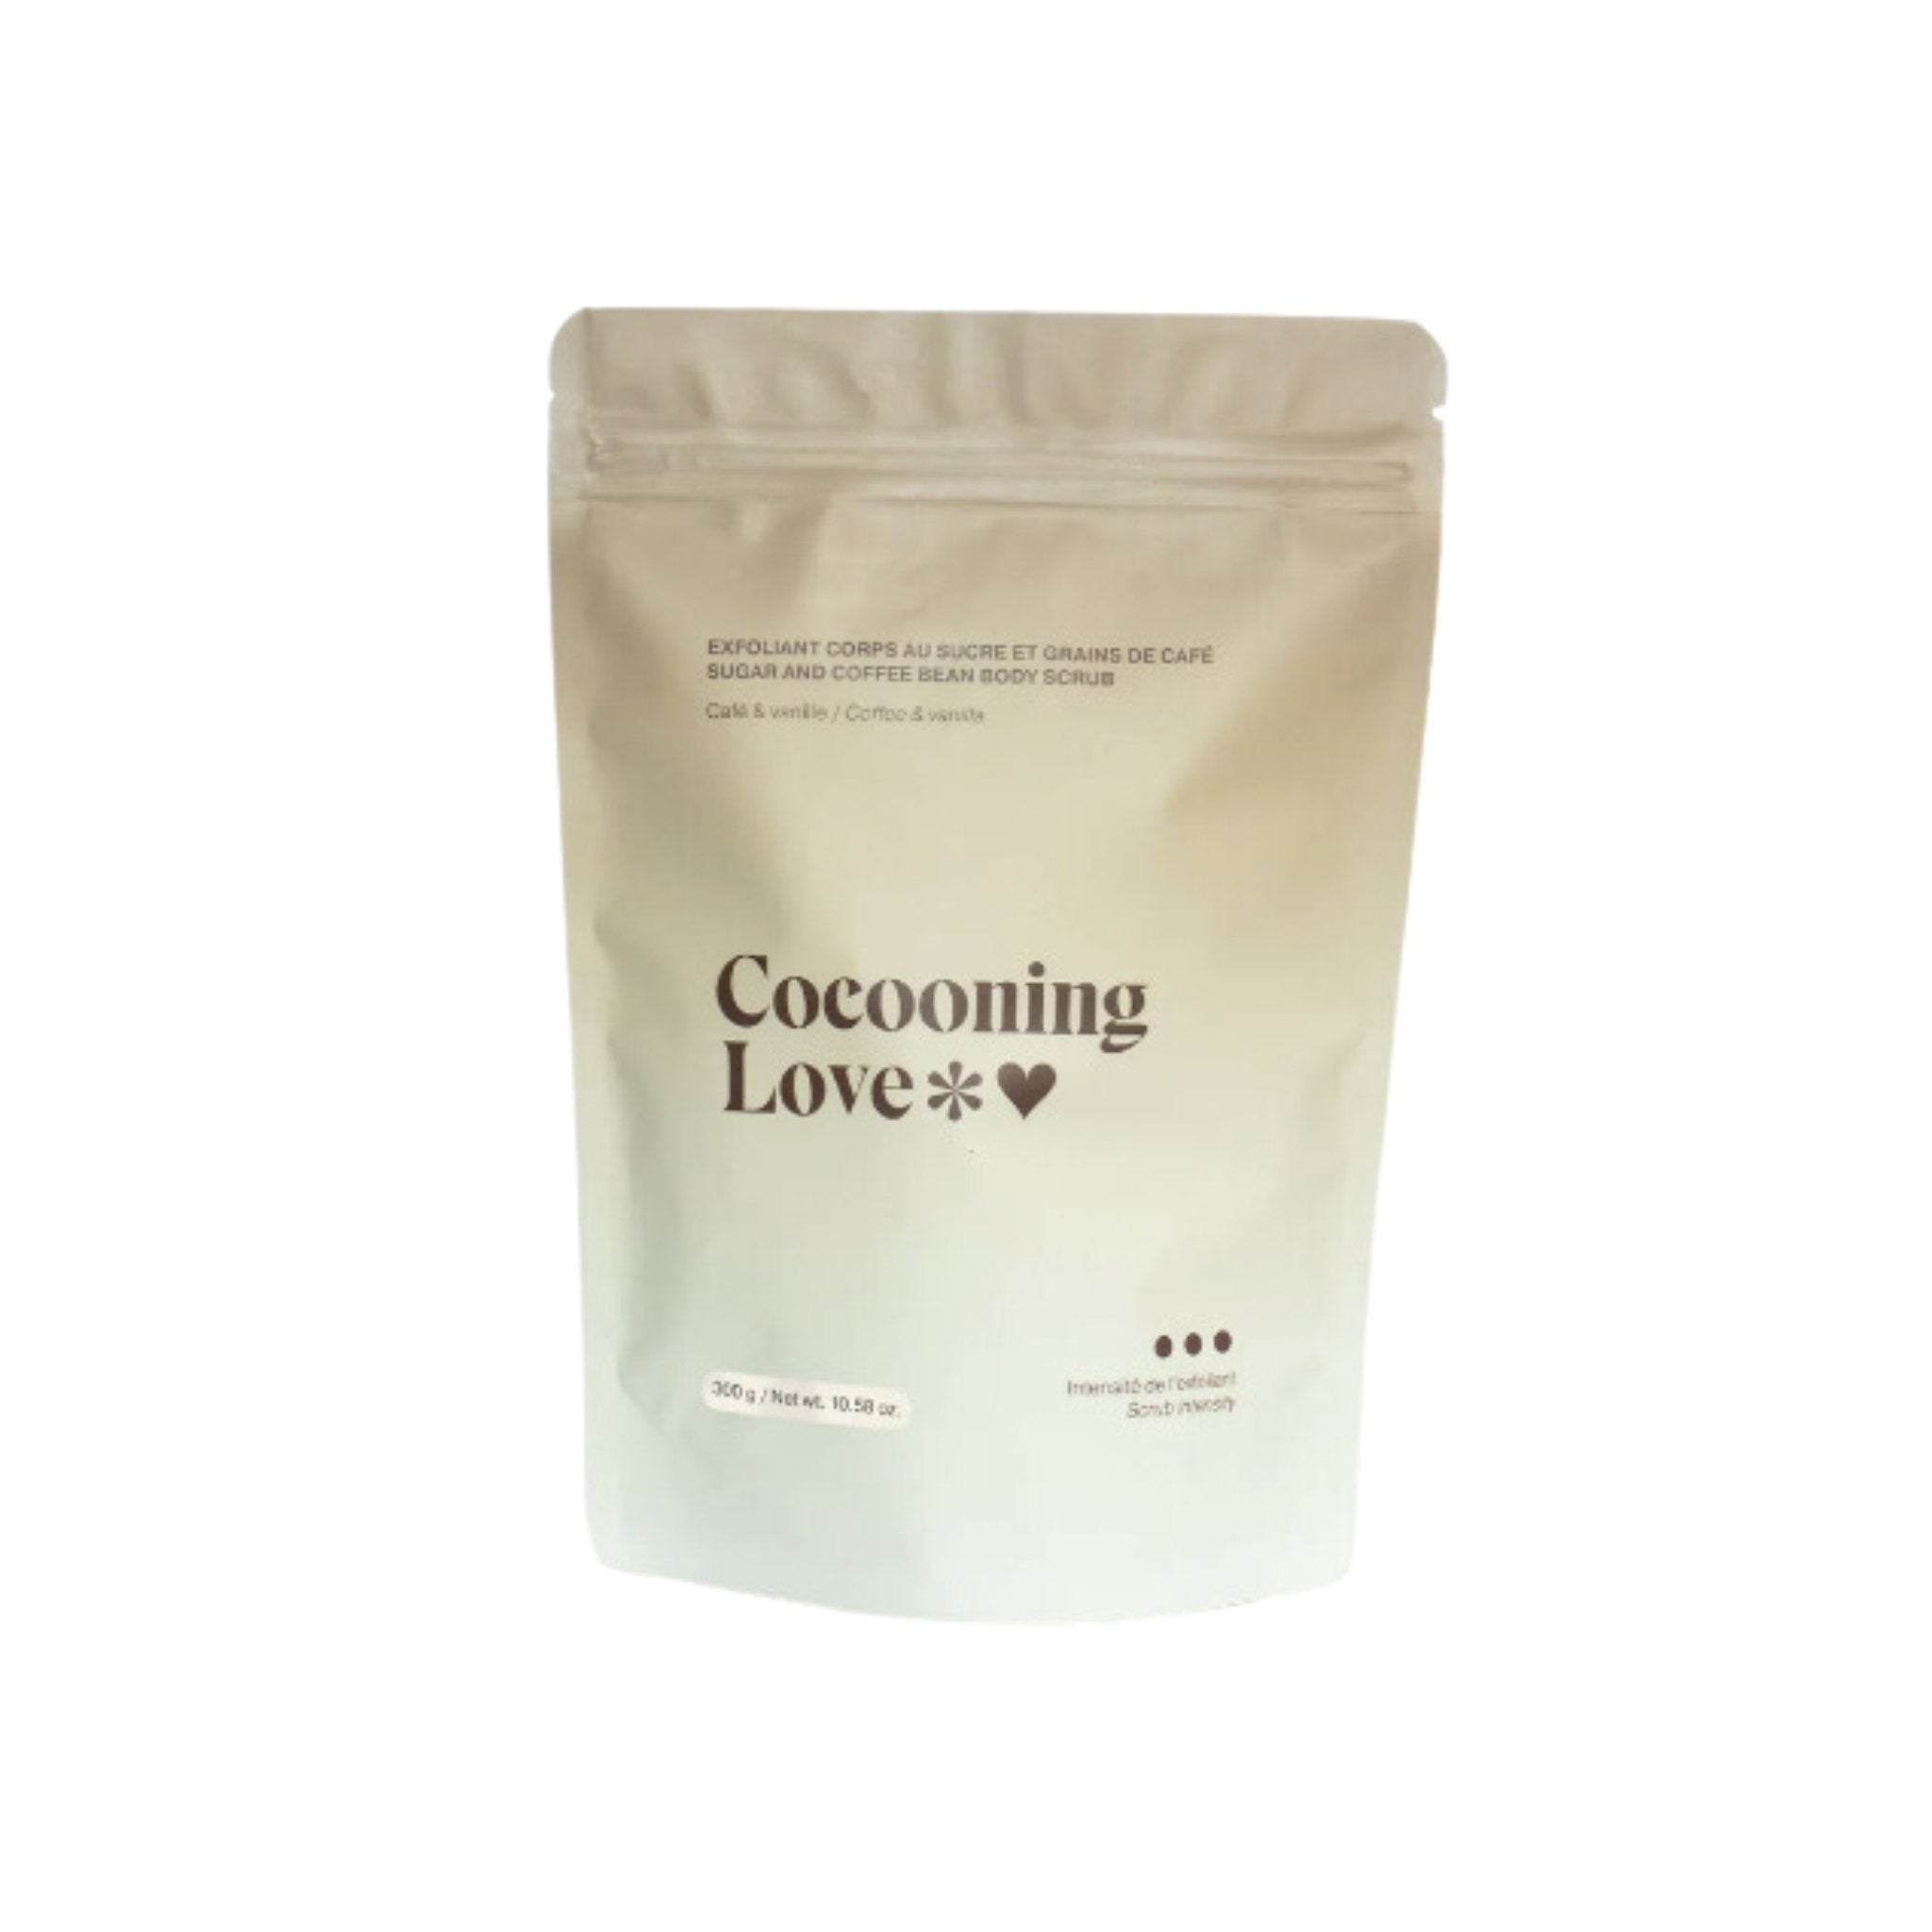 Cocooning Love. Exfoliant Corps au Sucre - Café & Vanille - 300 gr - Concept C. Shop